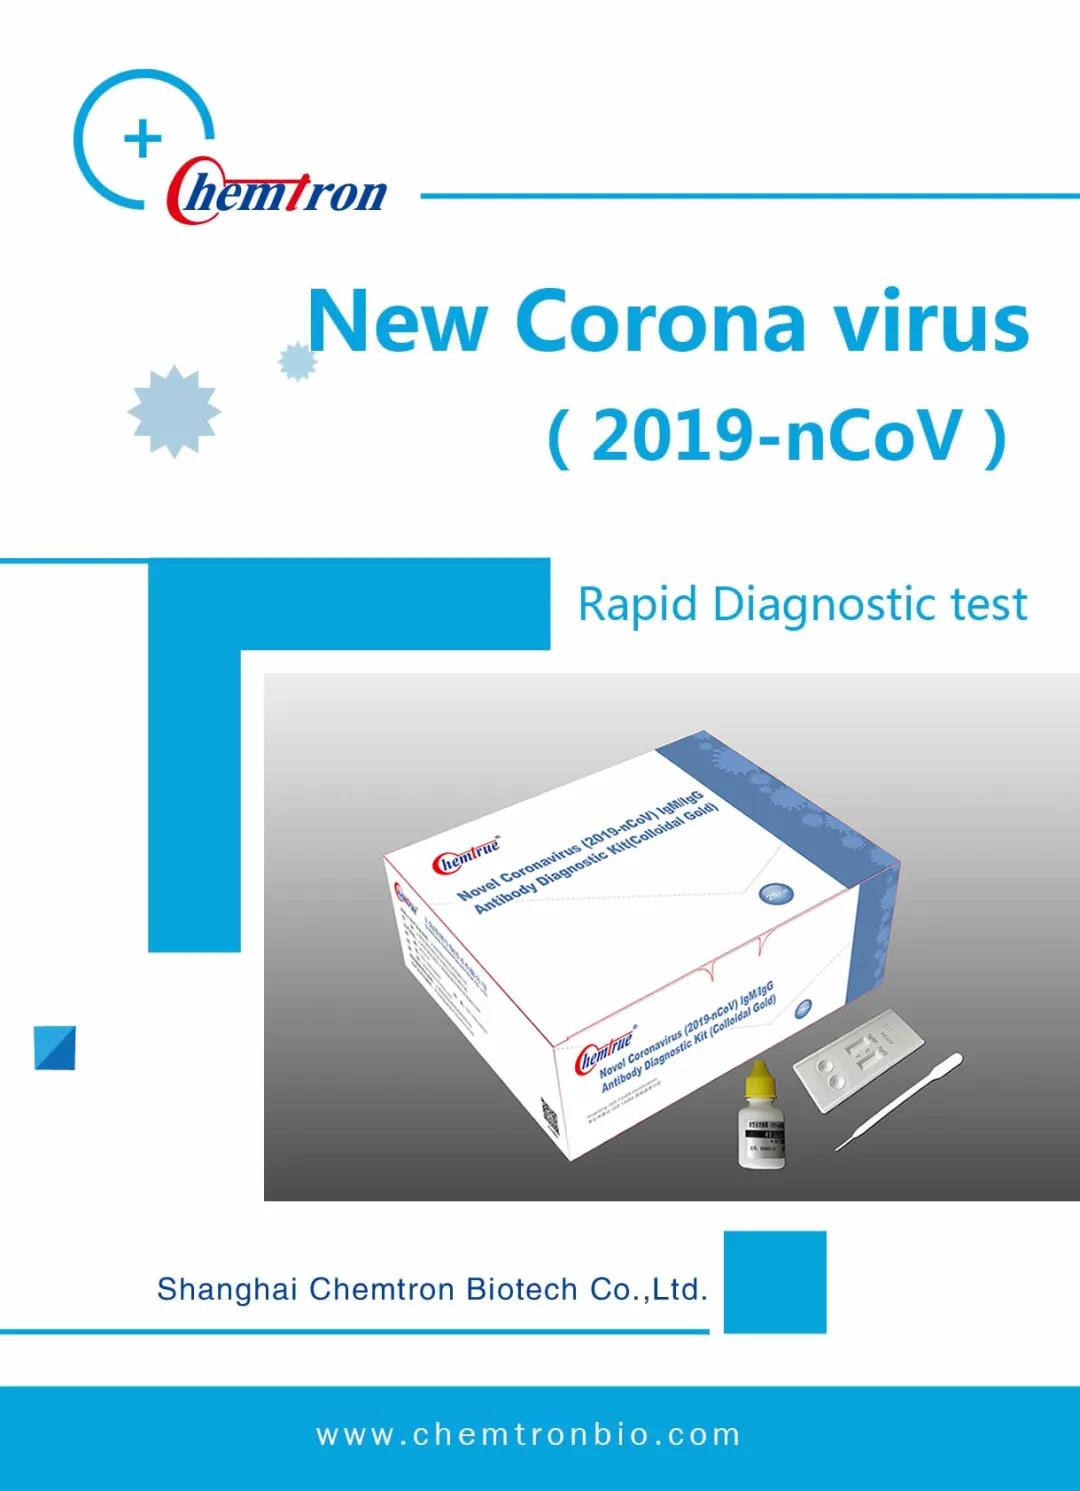 喜讯：双色球开奖结果生物新冠病毒检测试剂盒获得欧盟CE准入资格